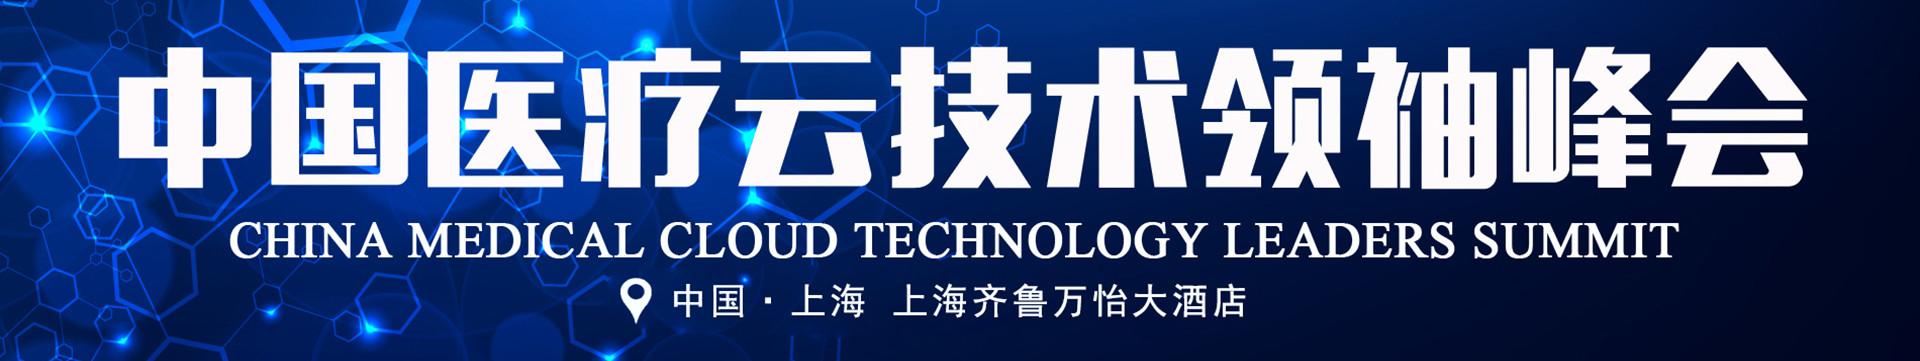 中国医疗云技术领袖峰会